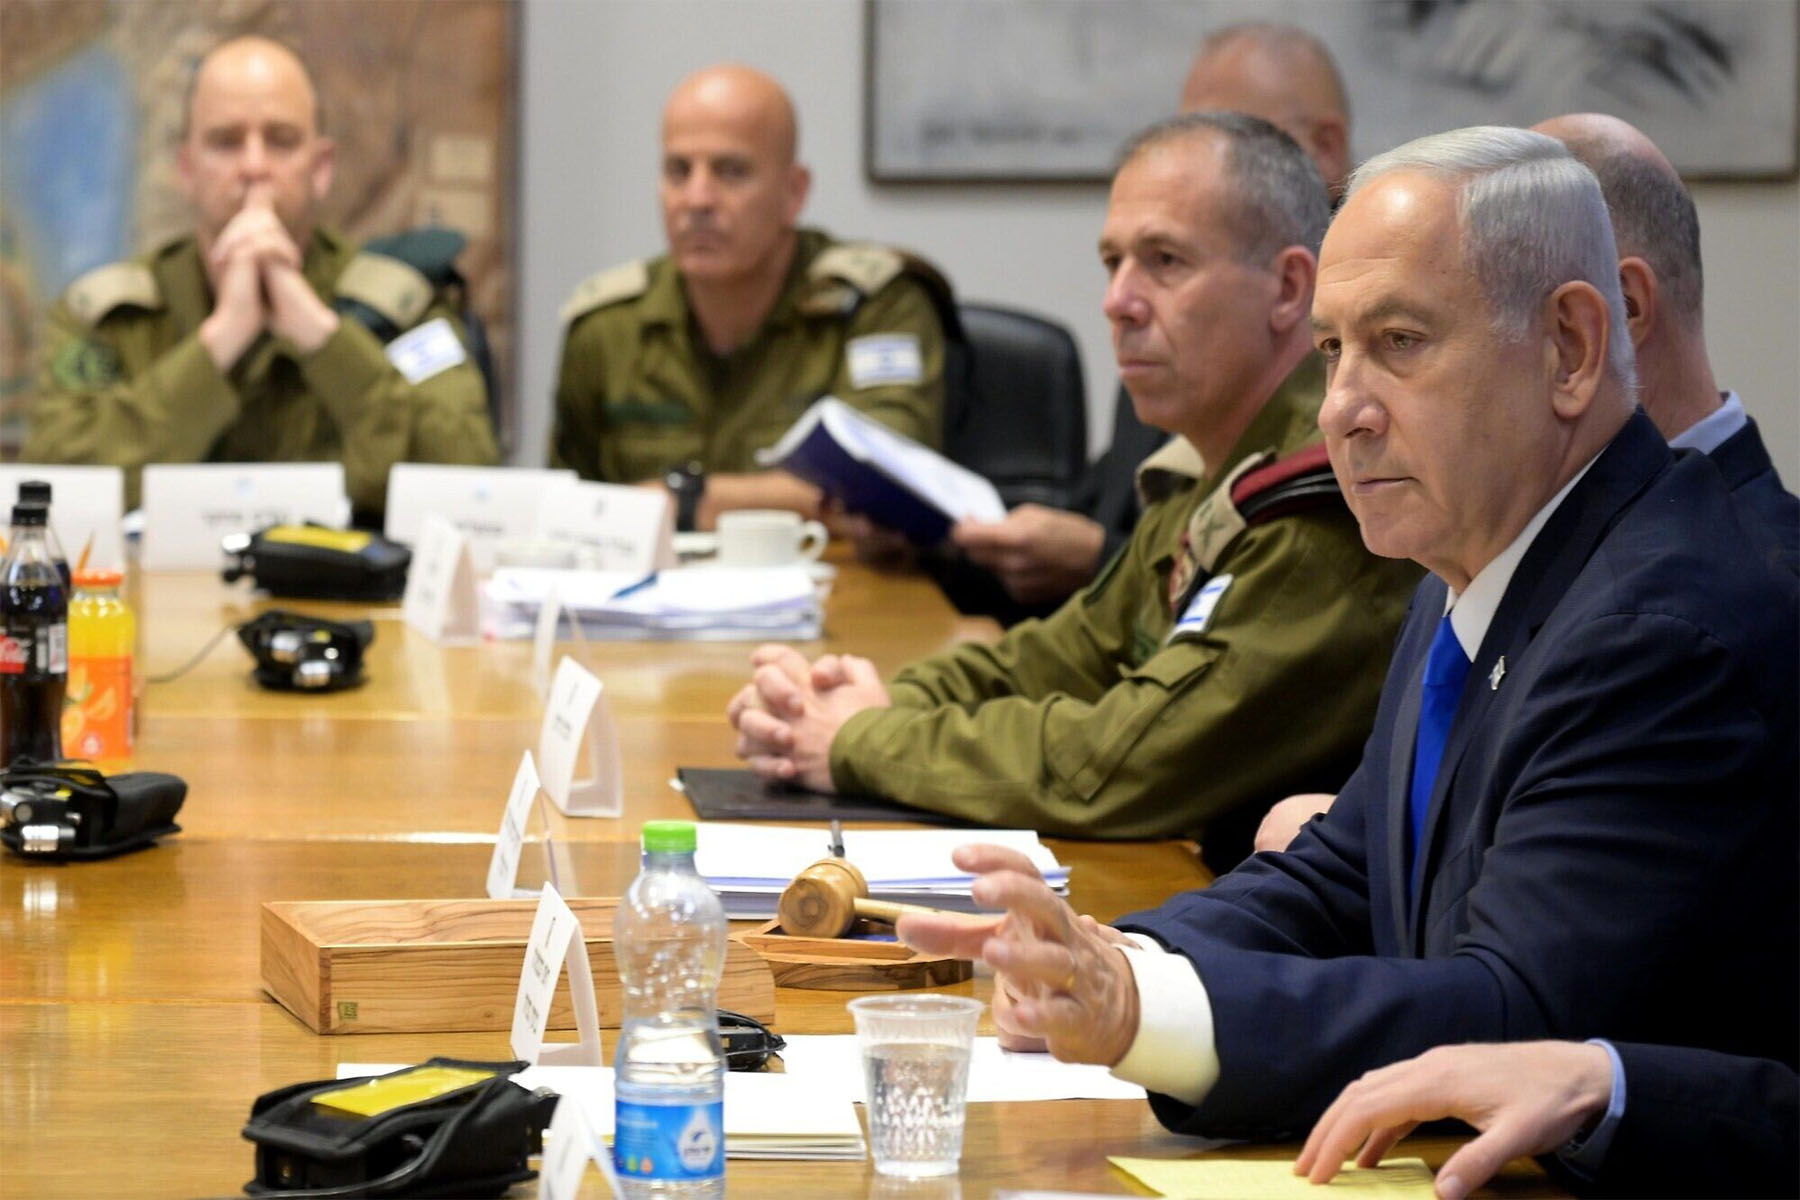 نتانیاهو در حالی که ترس از حمله جمهوری اسلامی به اسرائیل افزایش یافته است، با مقامات ارشد دیدار می کند